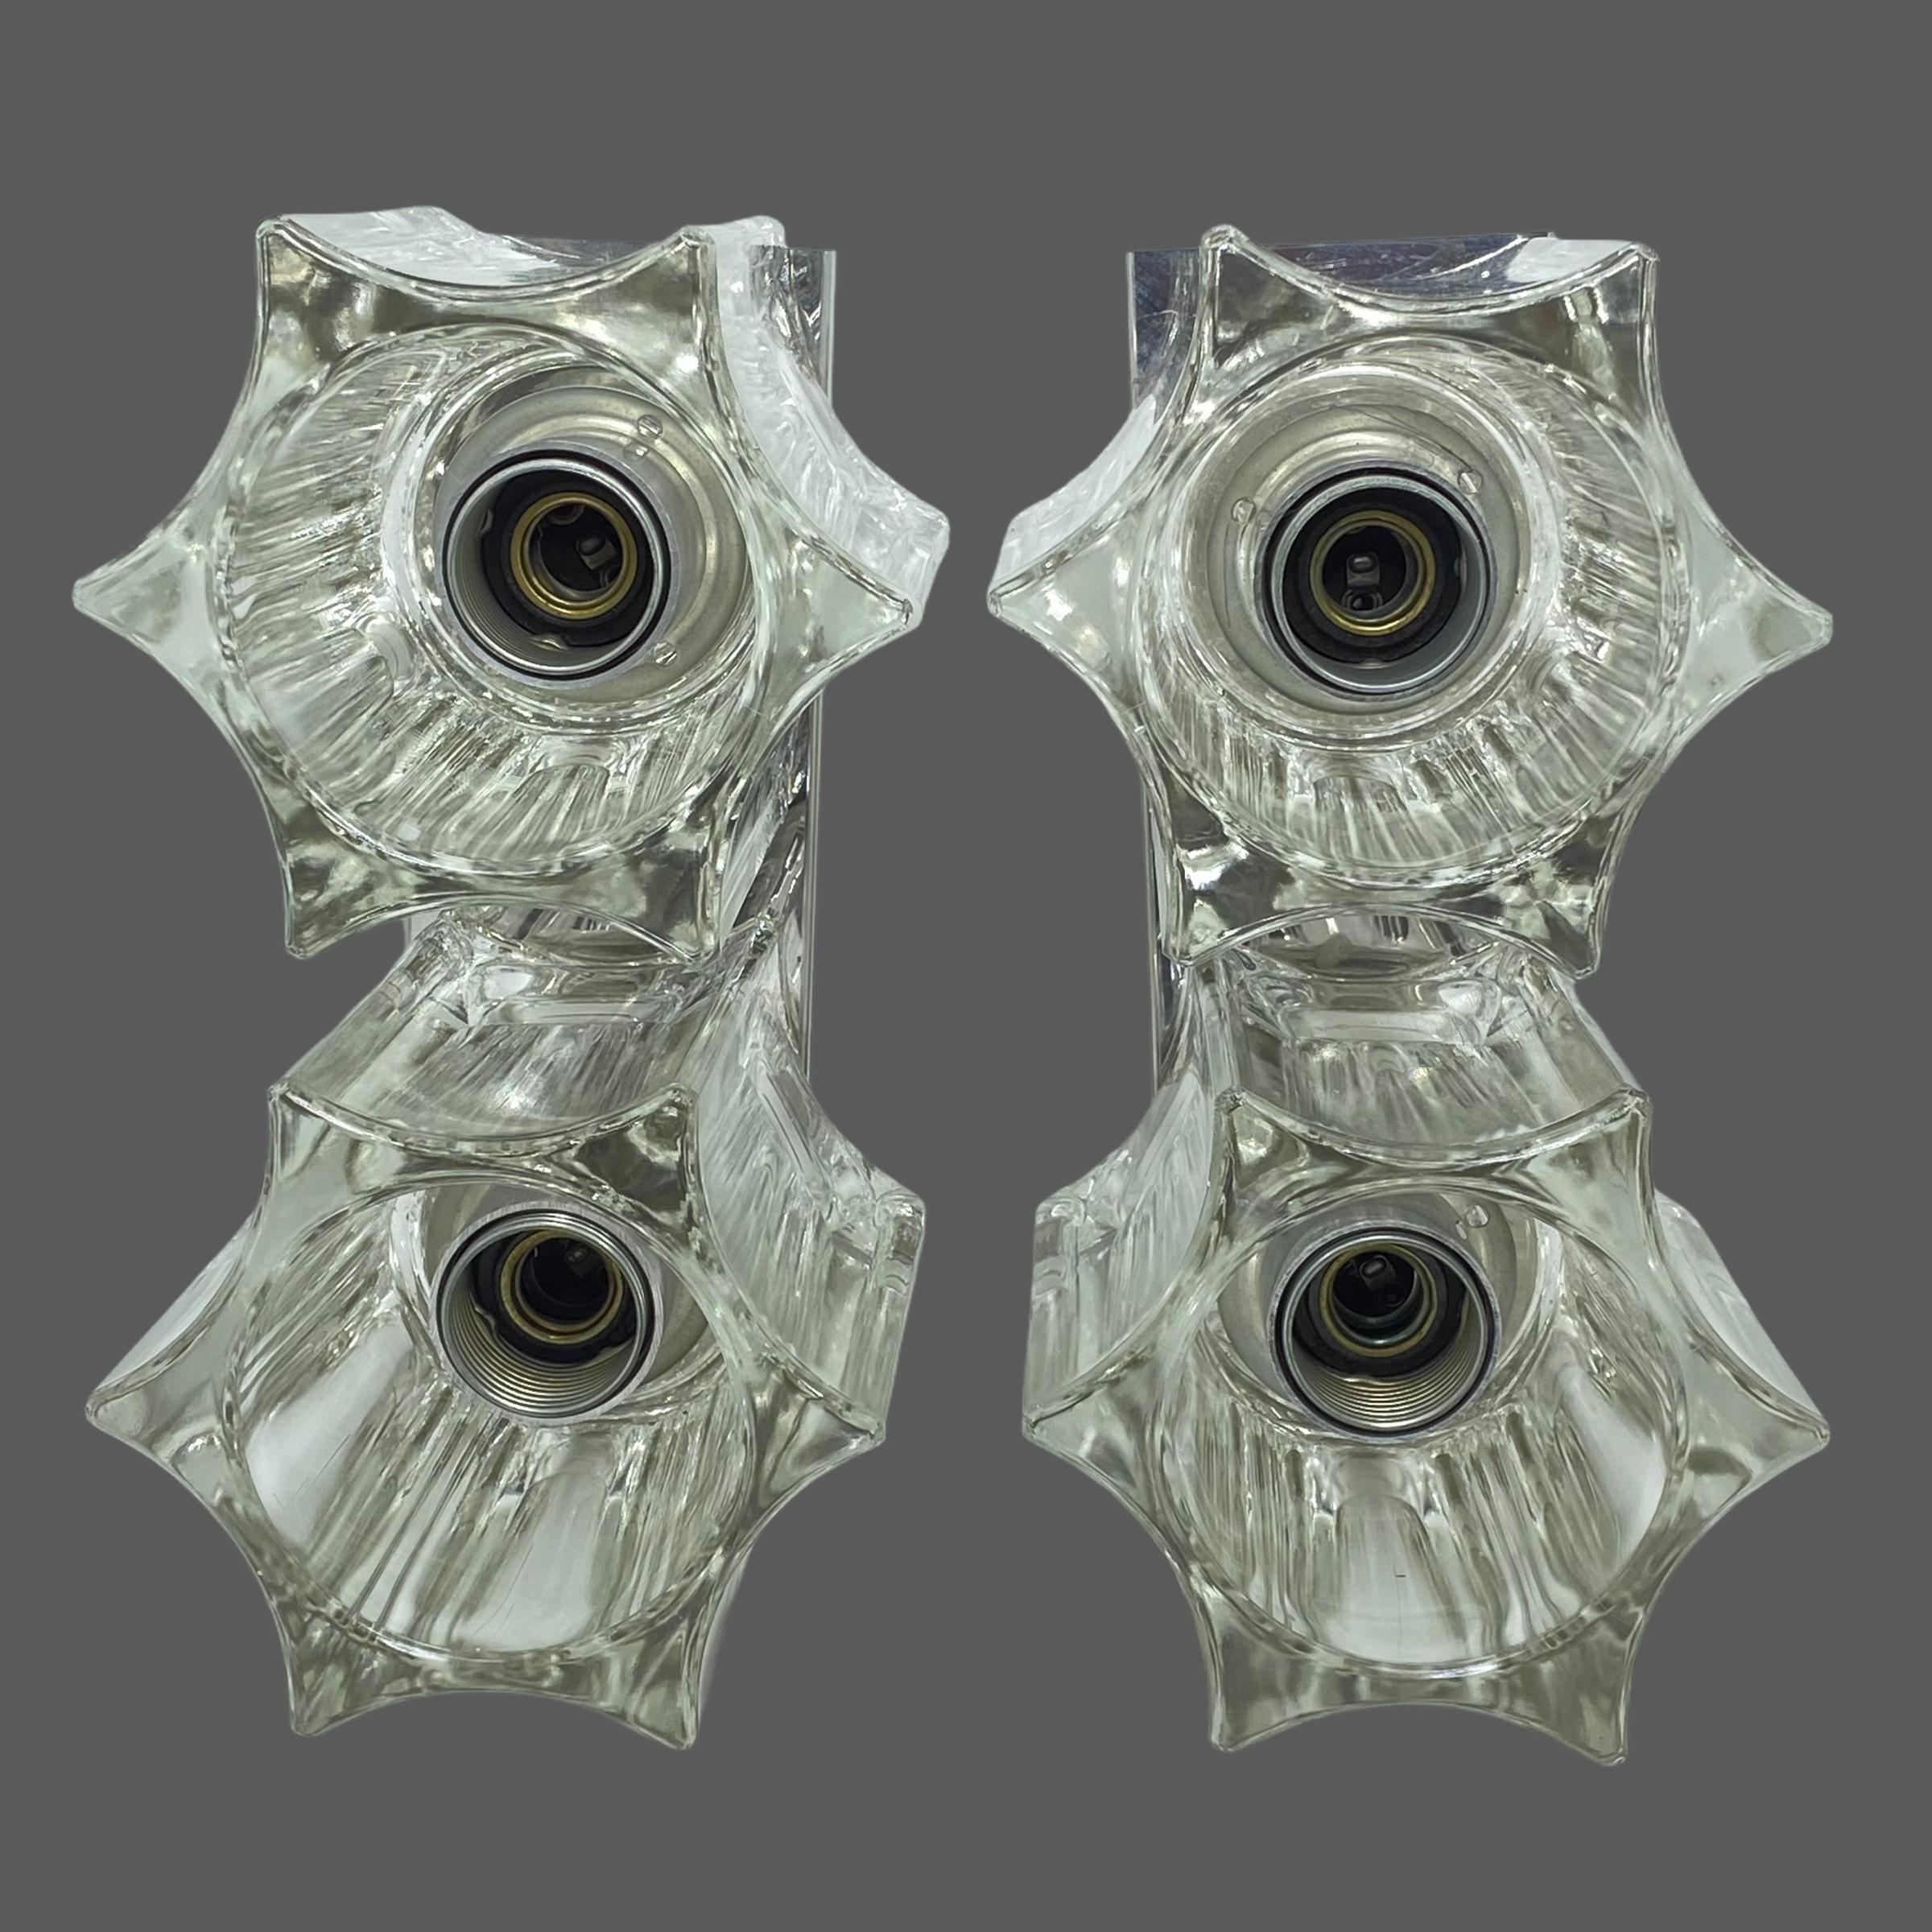 Ein Paar Starburst-Glasleuchten mit Chromsockel. Hergestellt in Deutschland. Jede Leuchte benötigt zwei europäische E14 / 110 Volt Kandelaberbirnen mit jeweils bis zu 40 Watt. Würde auch mit Spiegelglühbirnen gut aussehen. Schönes schickes